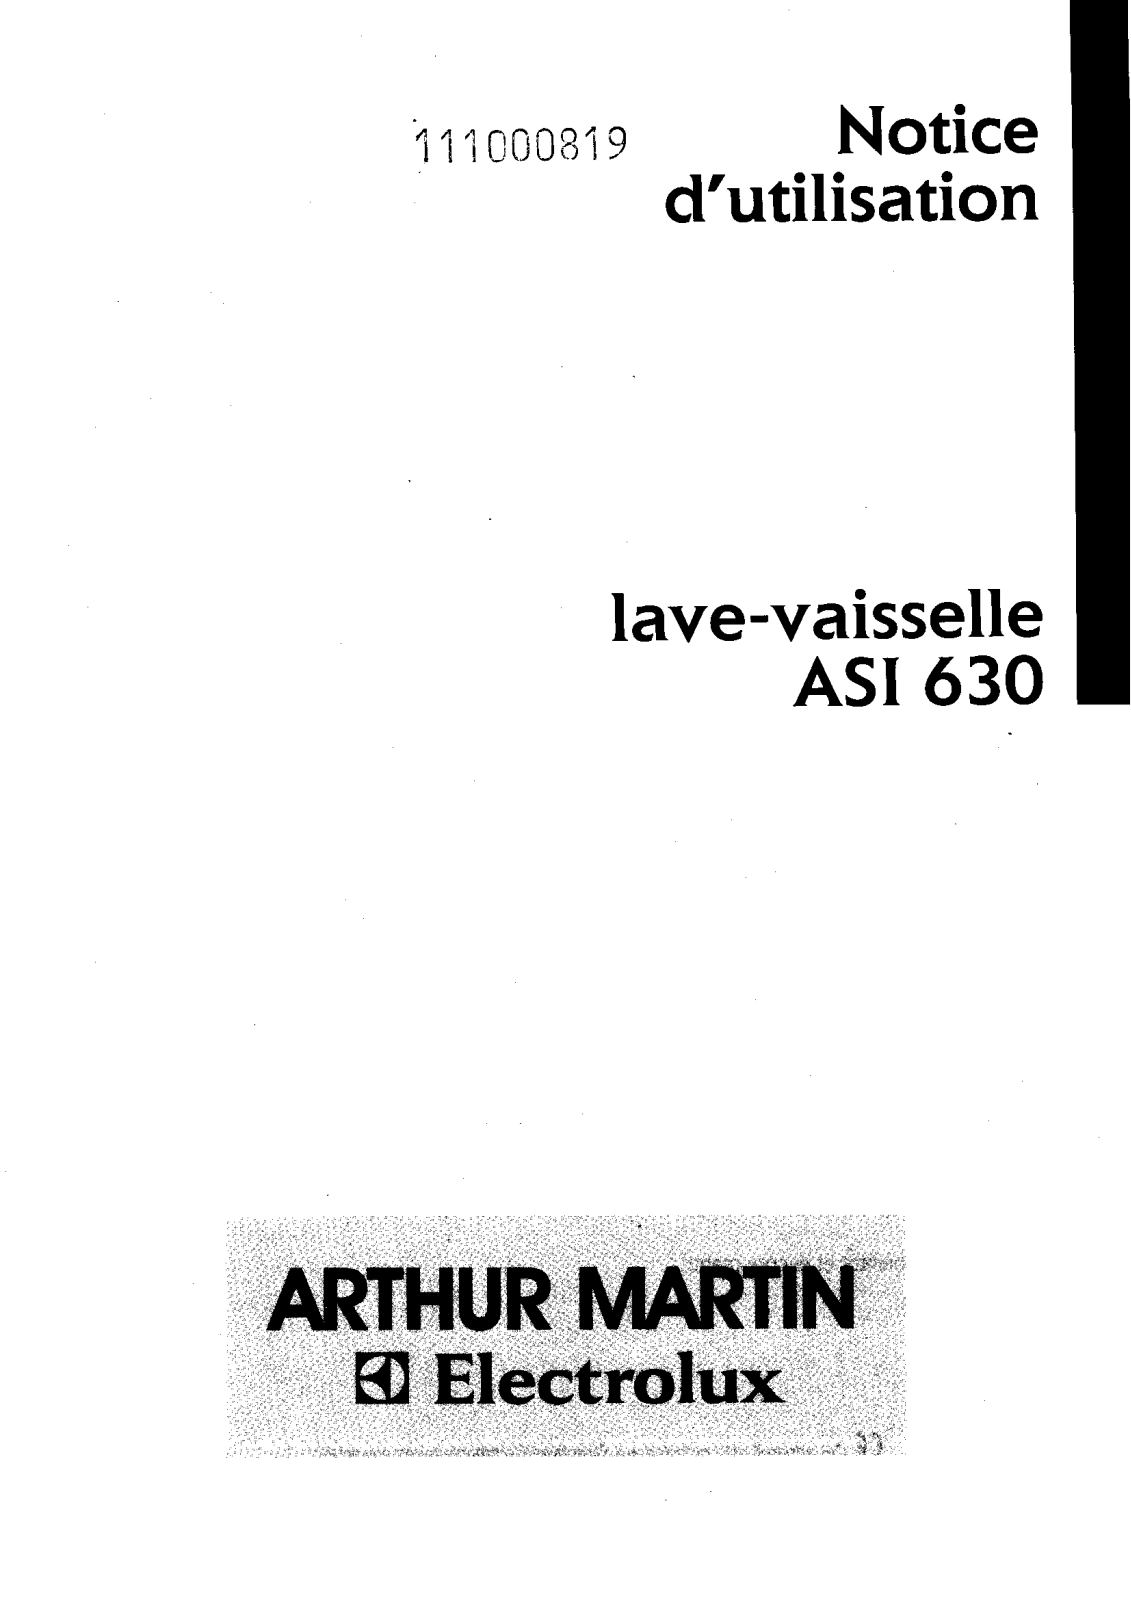 Arthur martin ASI630 User Manual